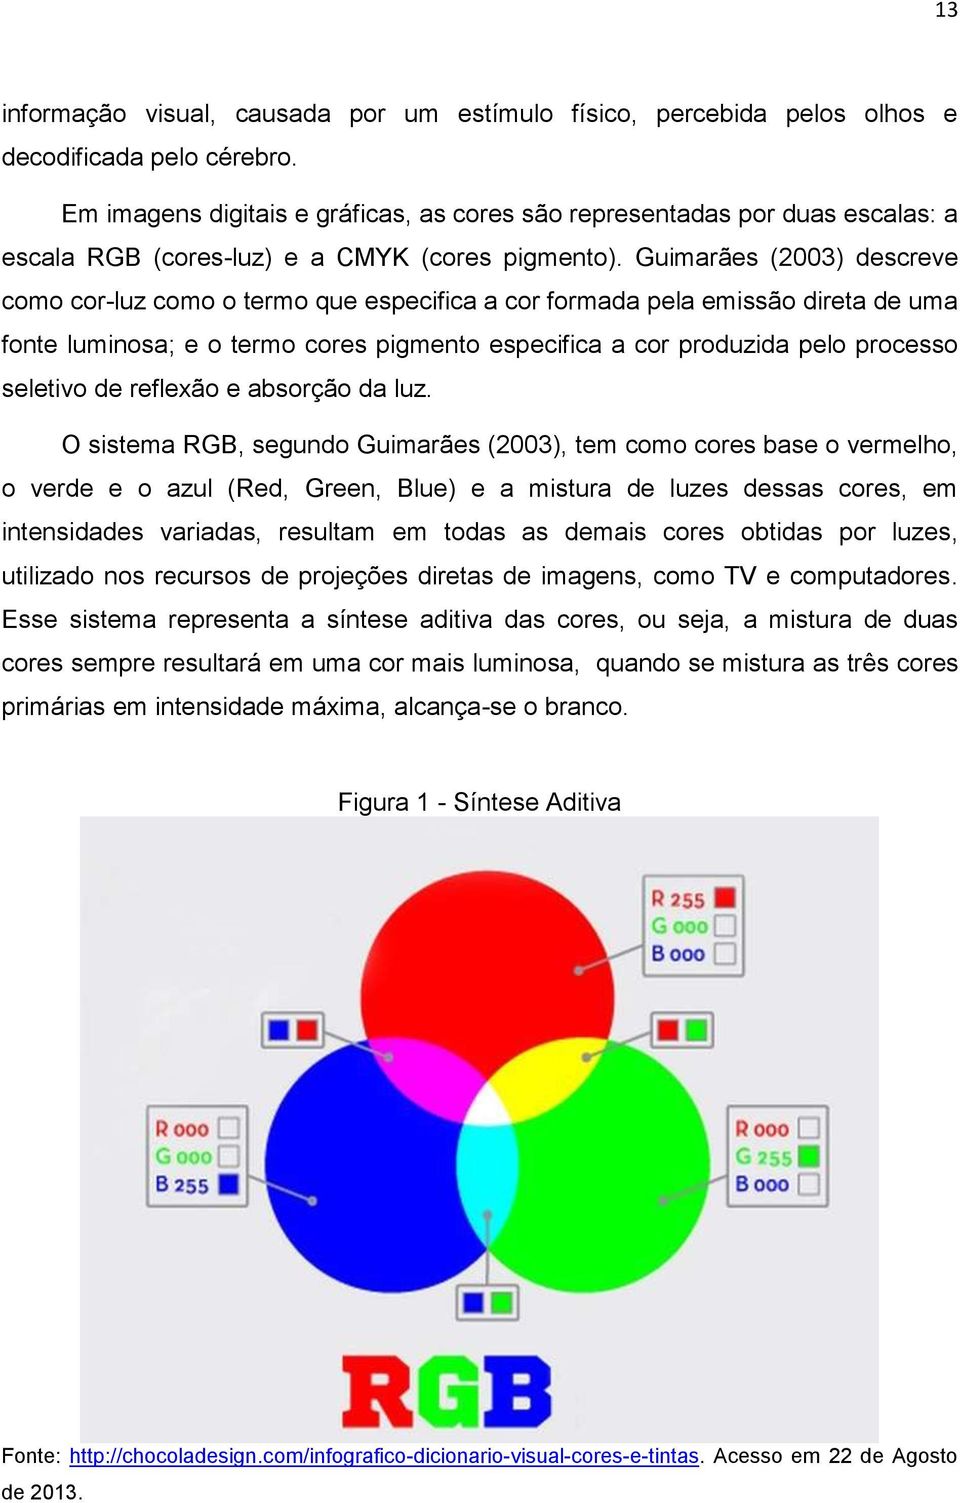 Guimarães (2003) descreve como cor-luz como o termo que especifica a cor formada pela emissão direta de uma fonte luminosa; e o termo cores pigmento especifica a cor produzida pelo processo seletivo